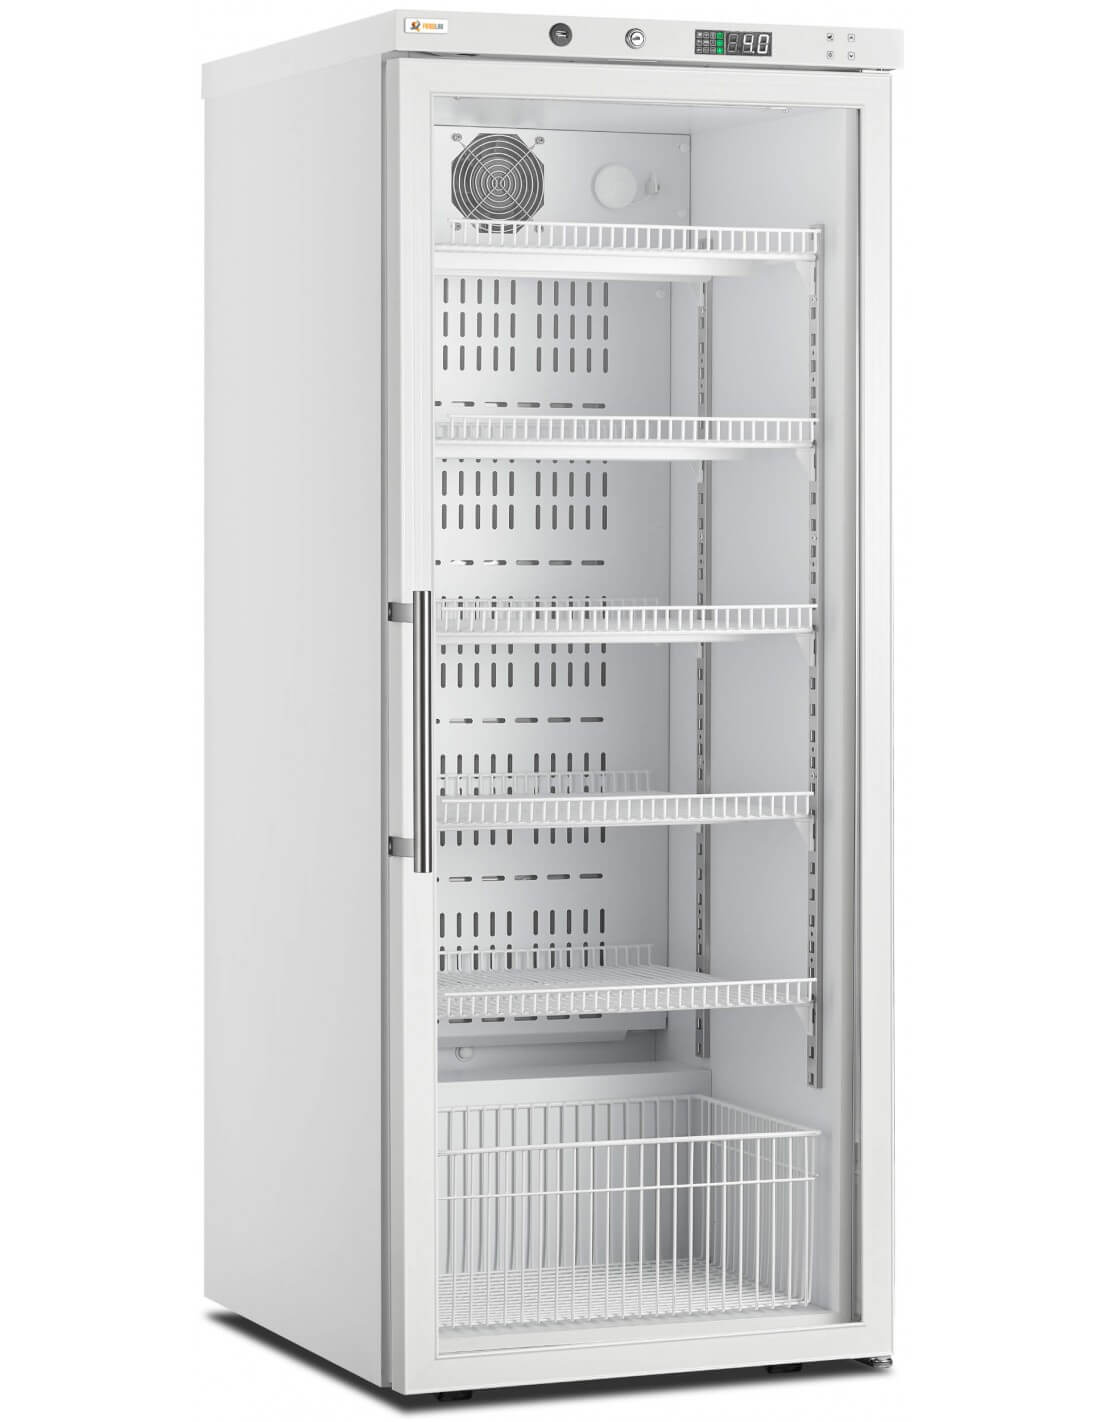 Tableau de refroidissement du compresseur d'un réfrigérateur avec